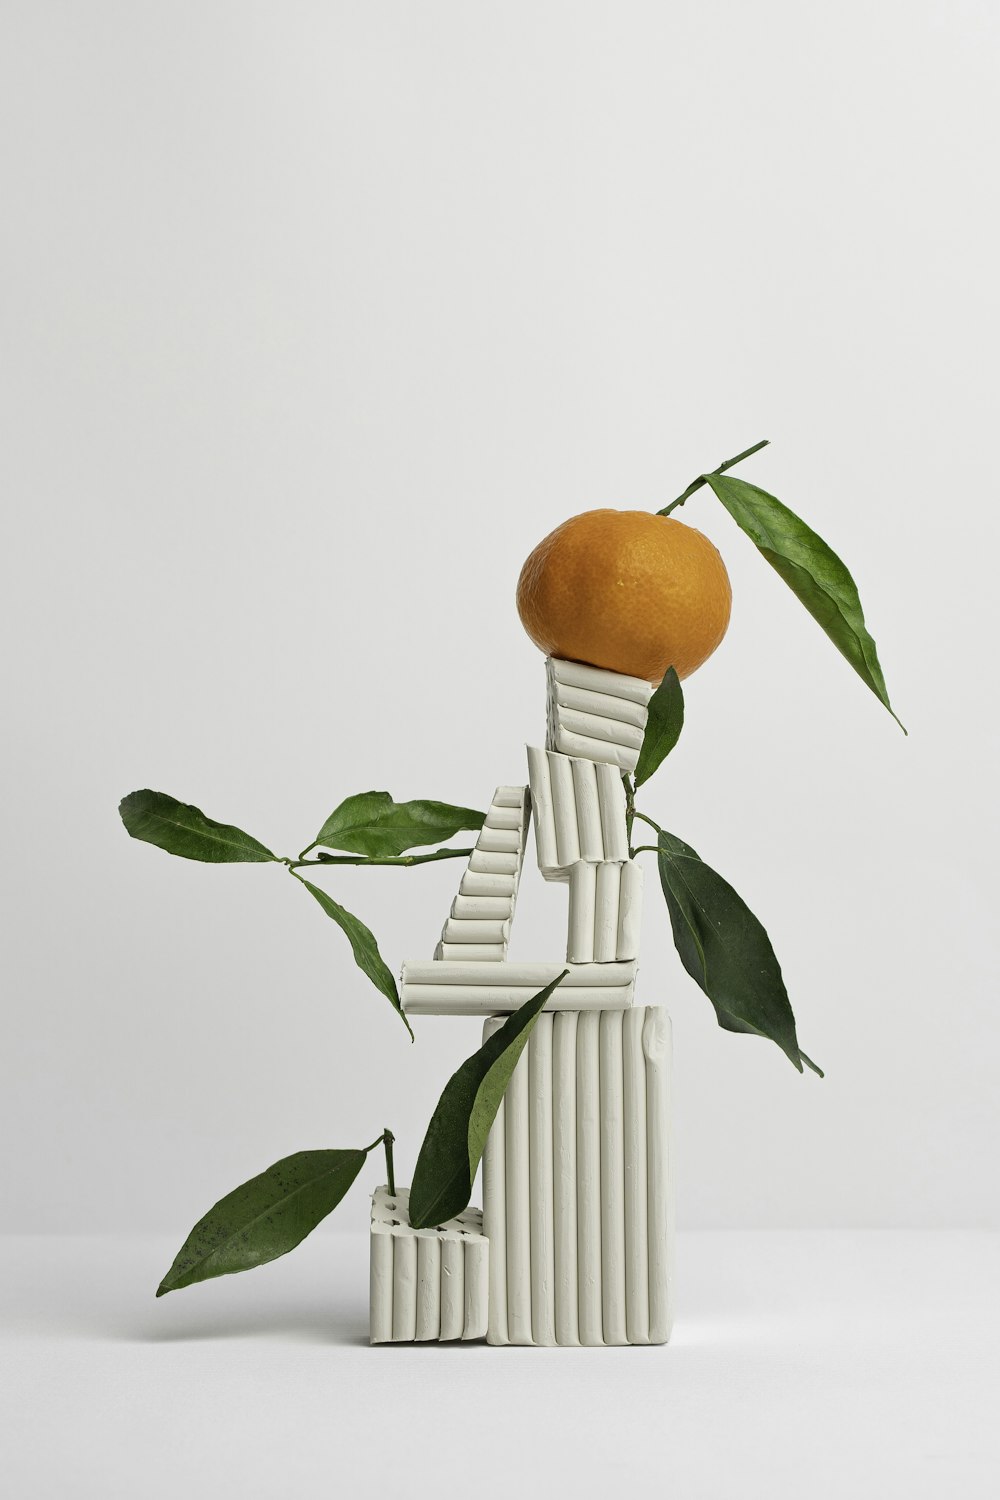 균형 잡힌 조각에 오렌지 과일